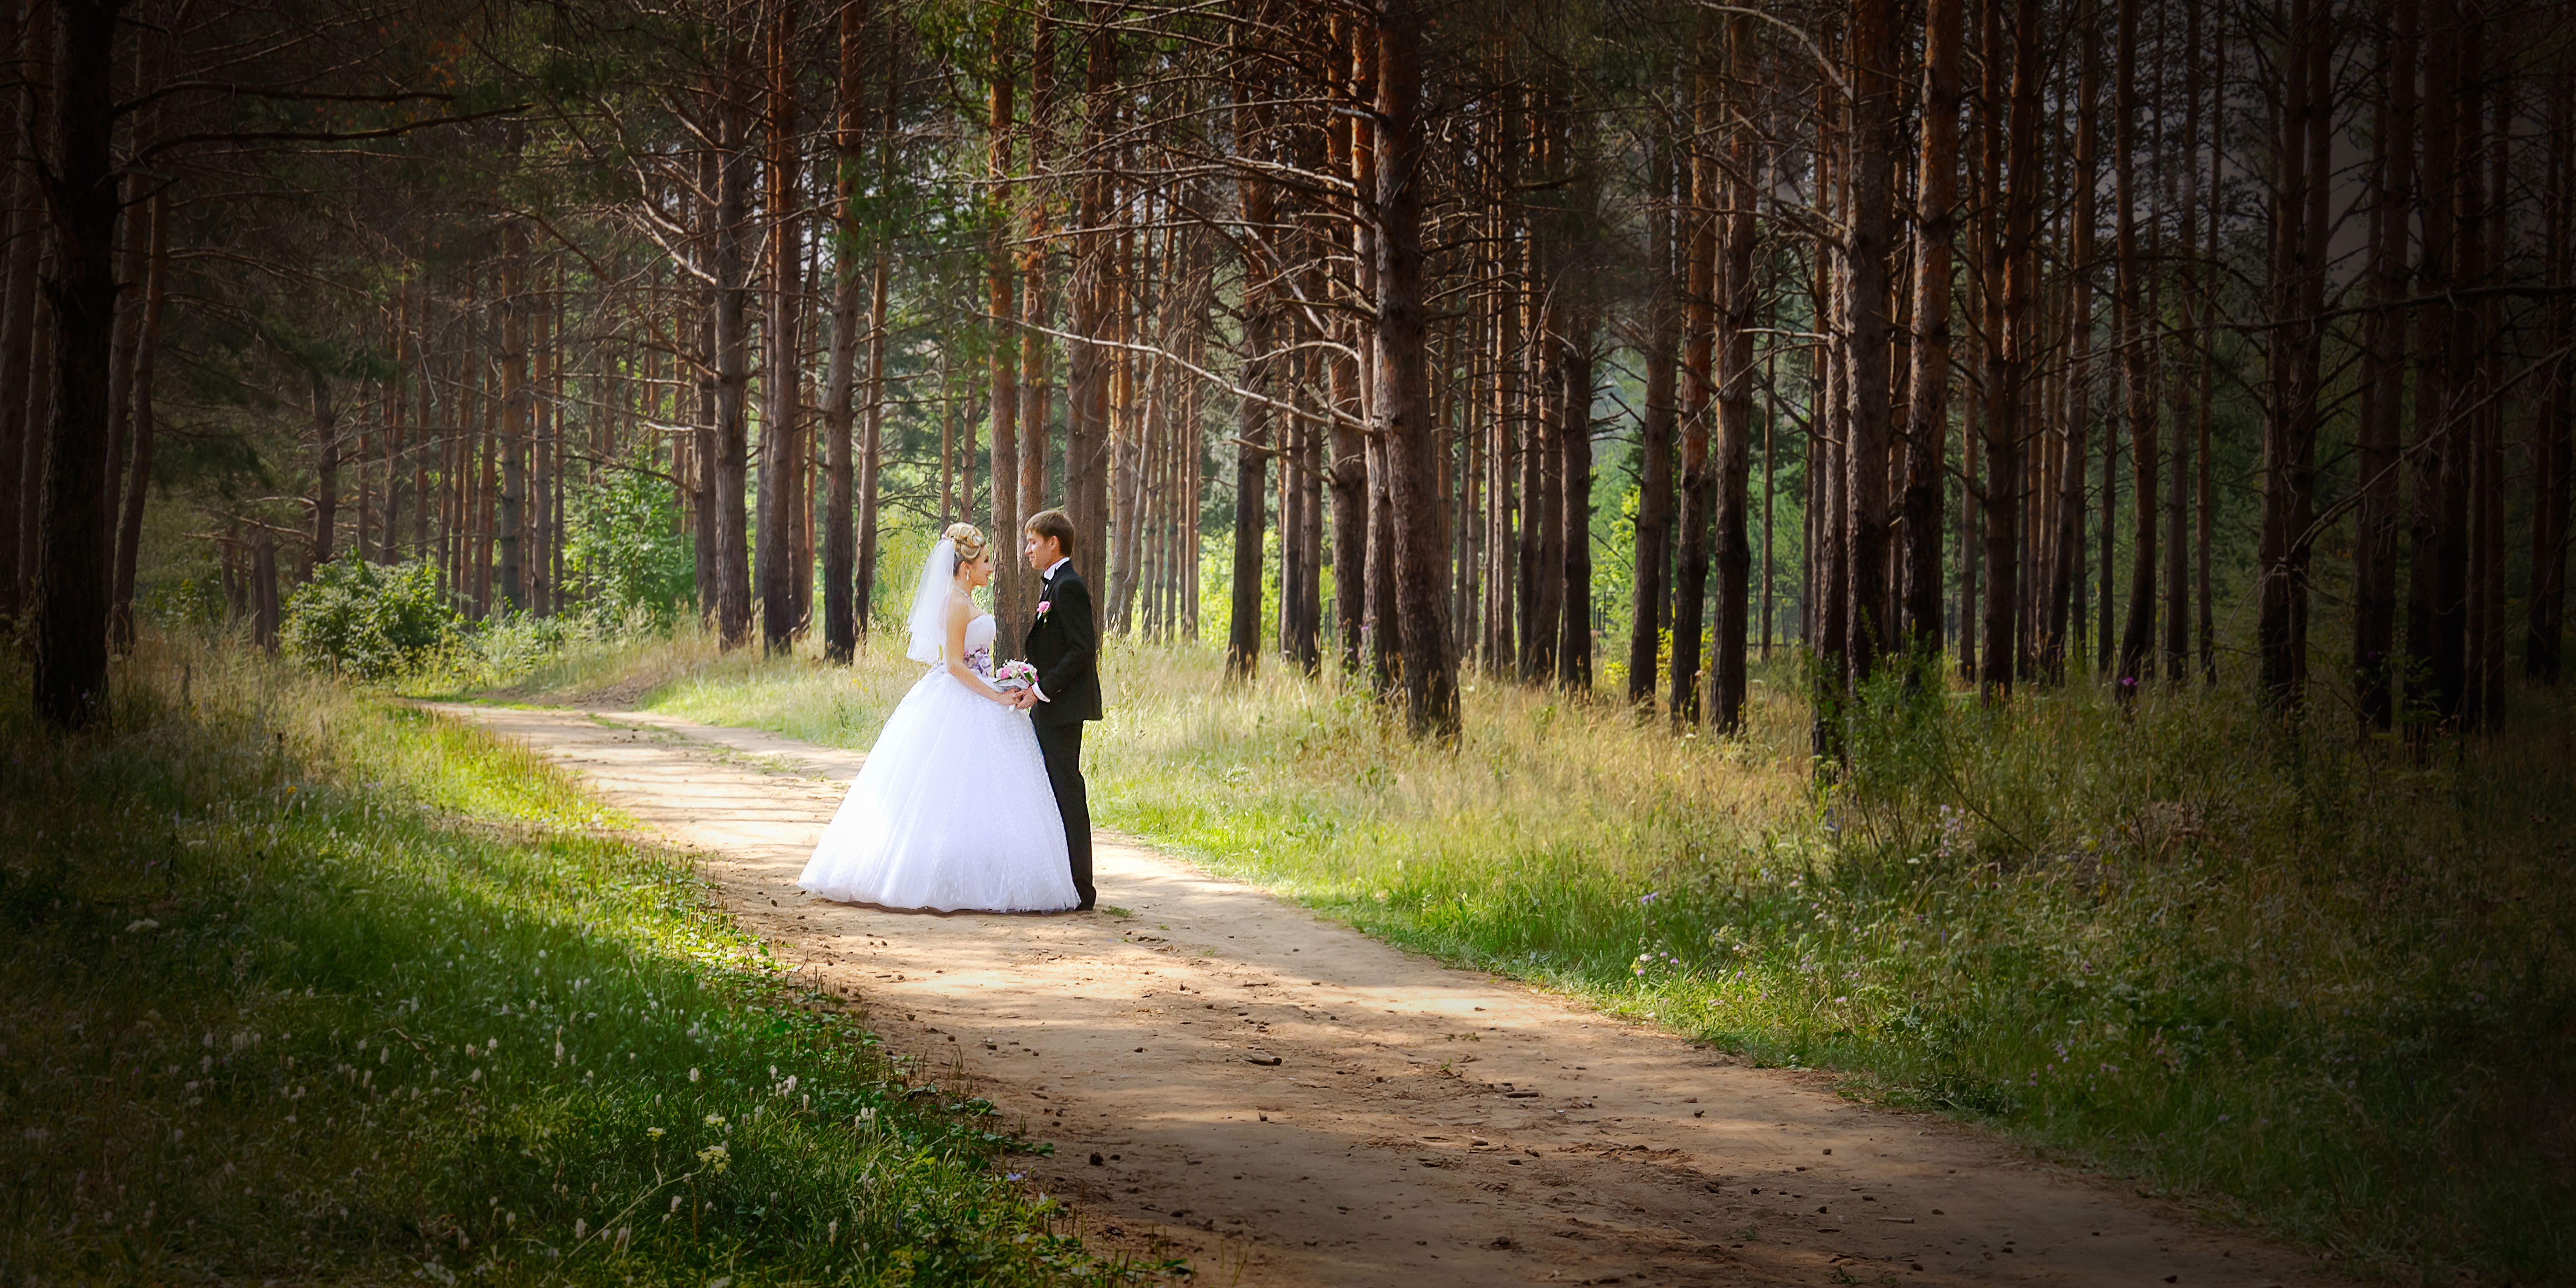 Фото дерево, природа, лес, солнечный свет, утро, лето, зелёный, осень, свадебные, невеста, только что вышла замуж, прогулка, деревья, церемонии, платье - бесплатные картинки на Fonwall